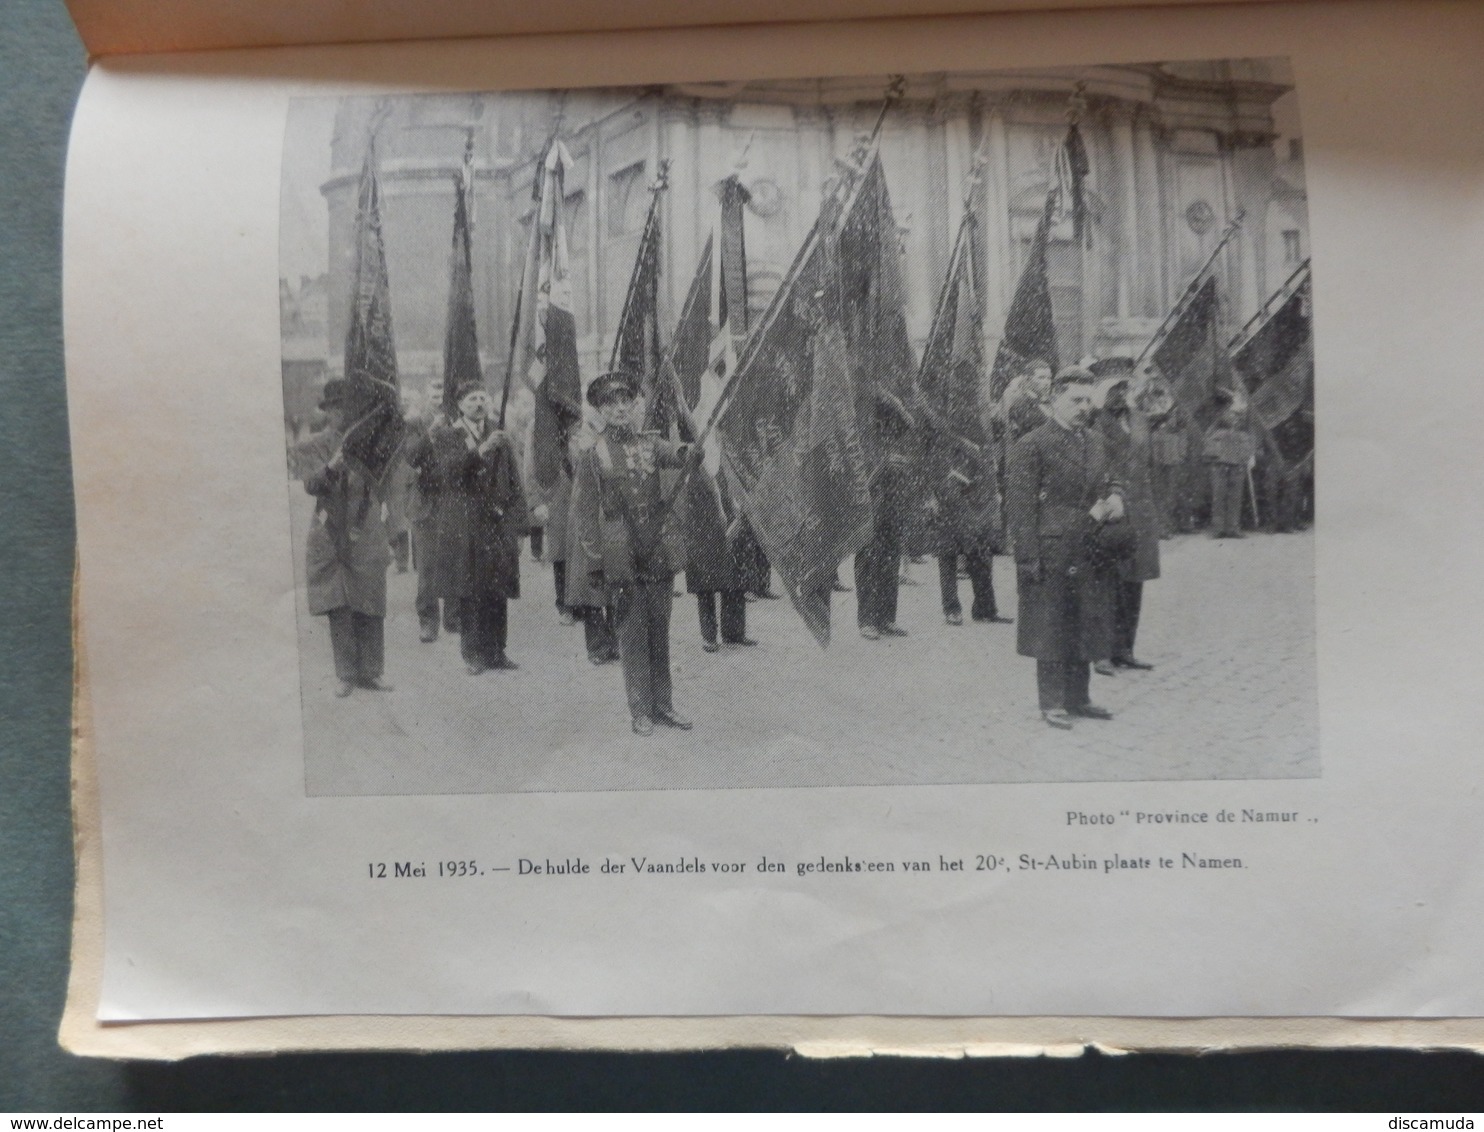 Diksmuide - 20e Linieregiment - Zijne roemrijke vermeldingen - mei 1935